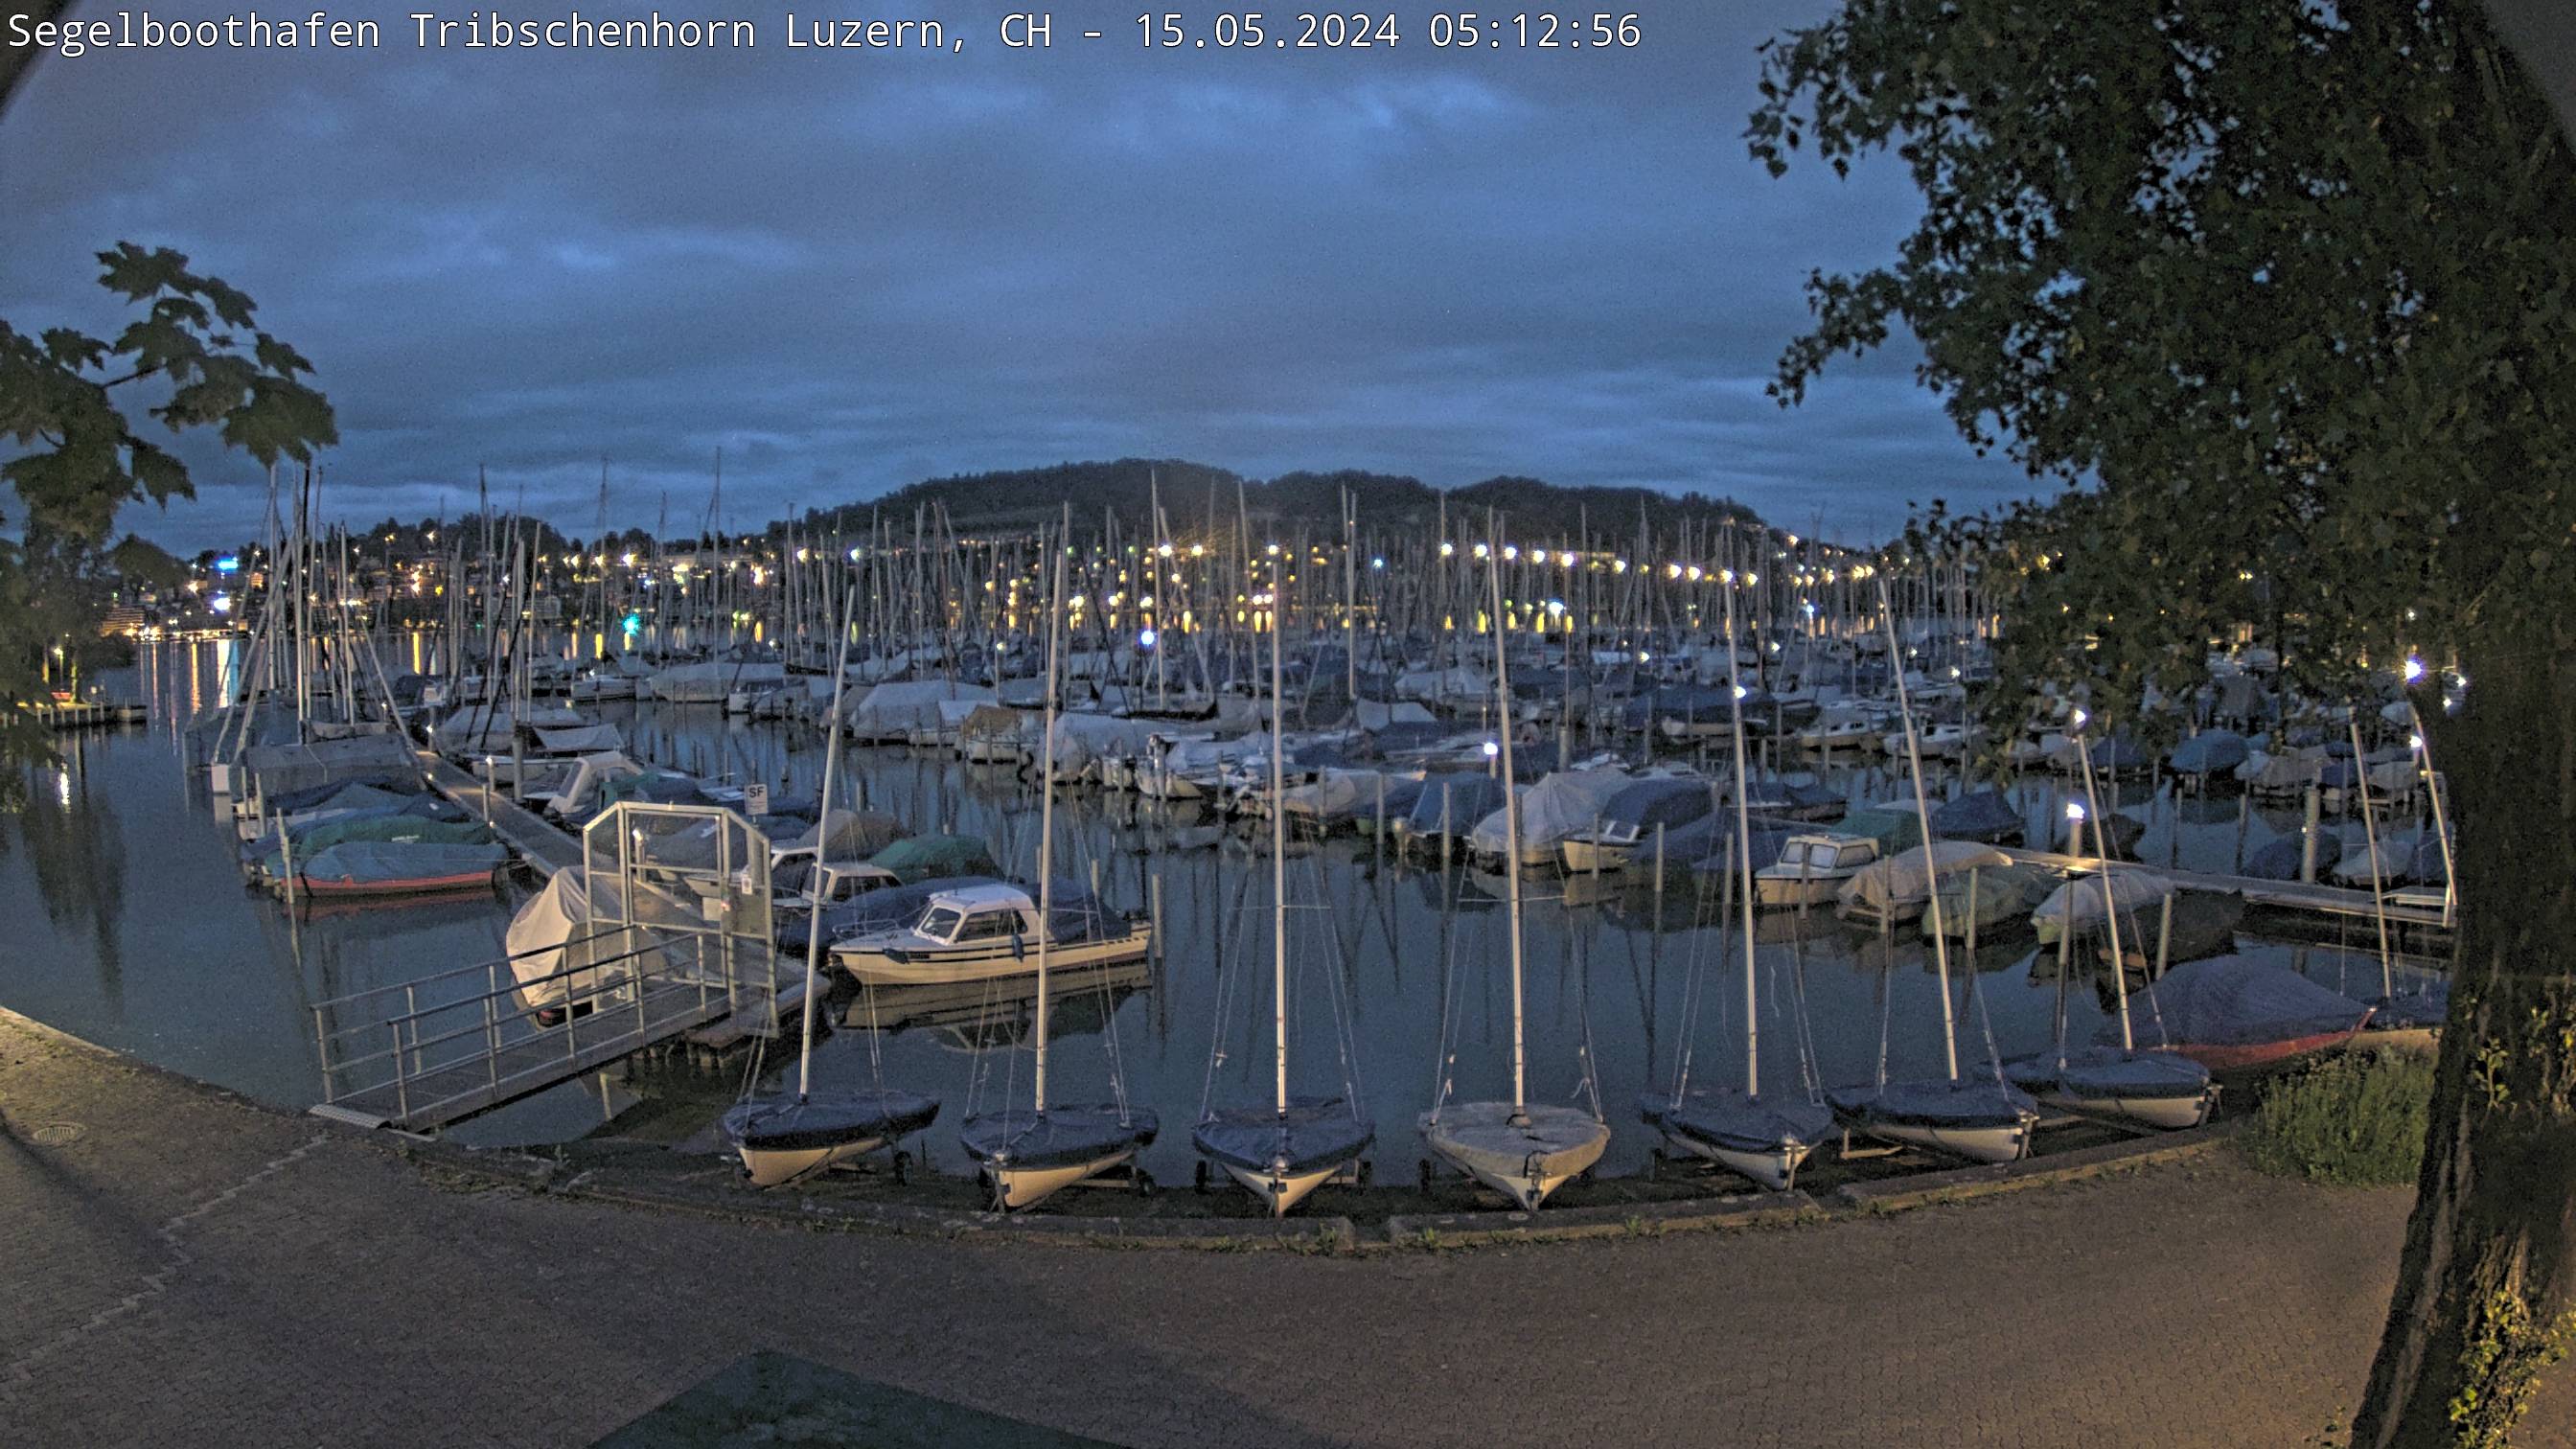 Livecam Segelboothafen Tribschenhorn